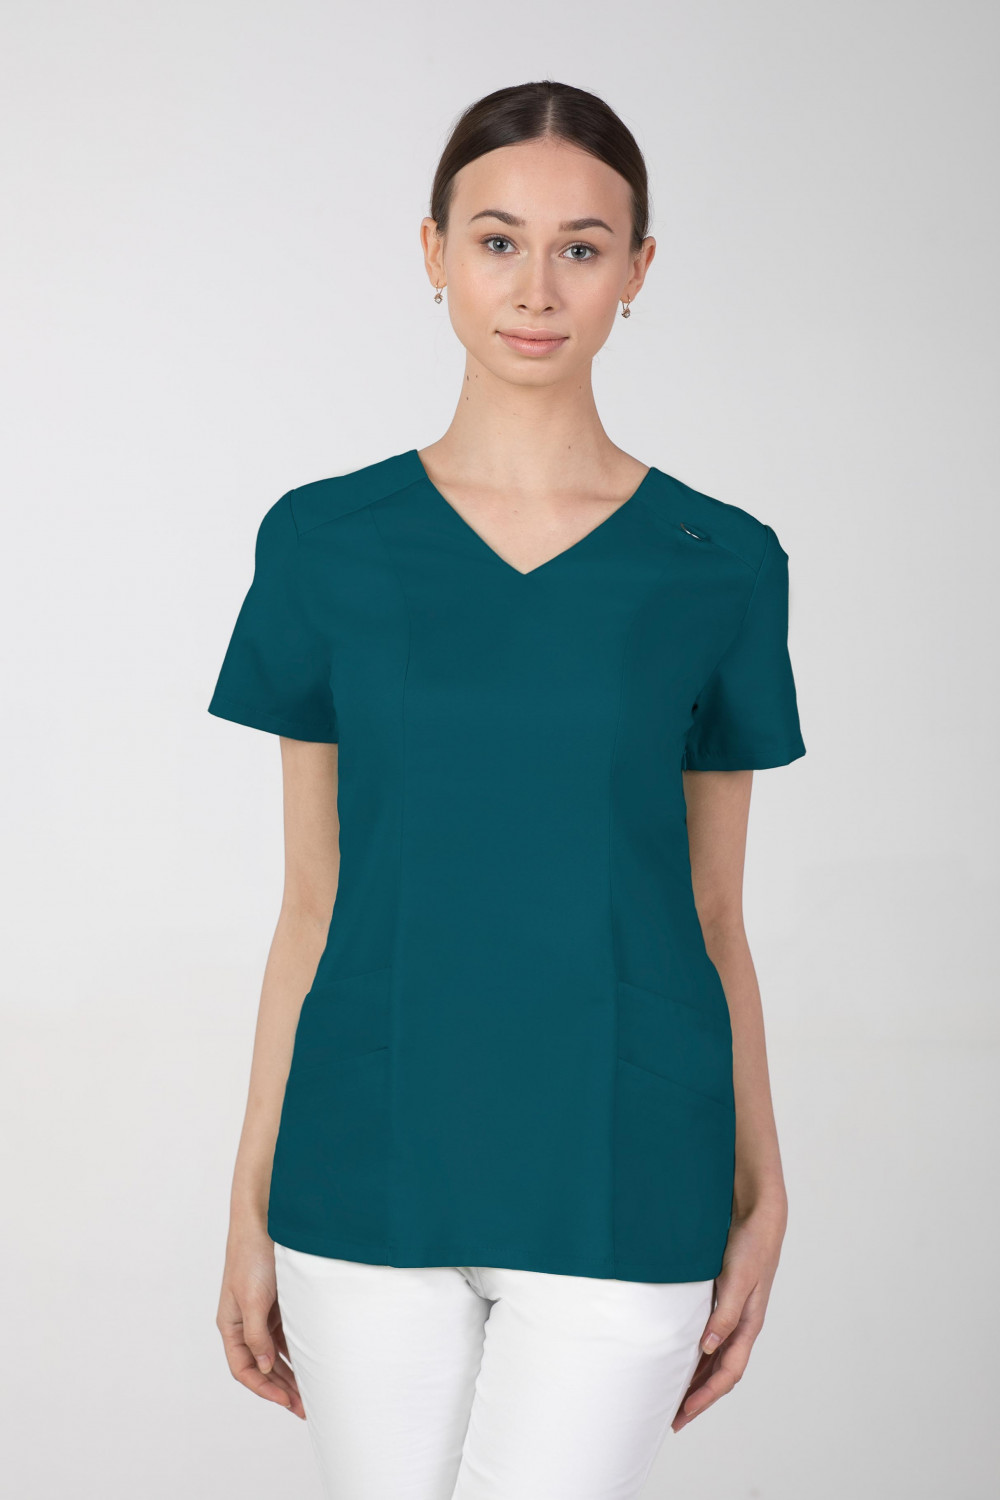 Bluza medyczna damska M-376A 26 kolorów. Ciemny zielony